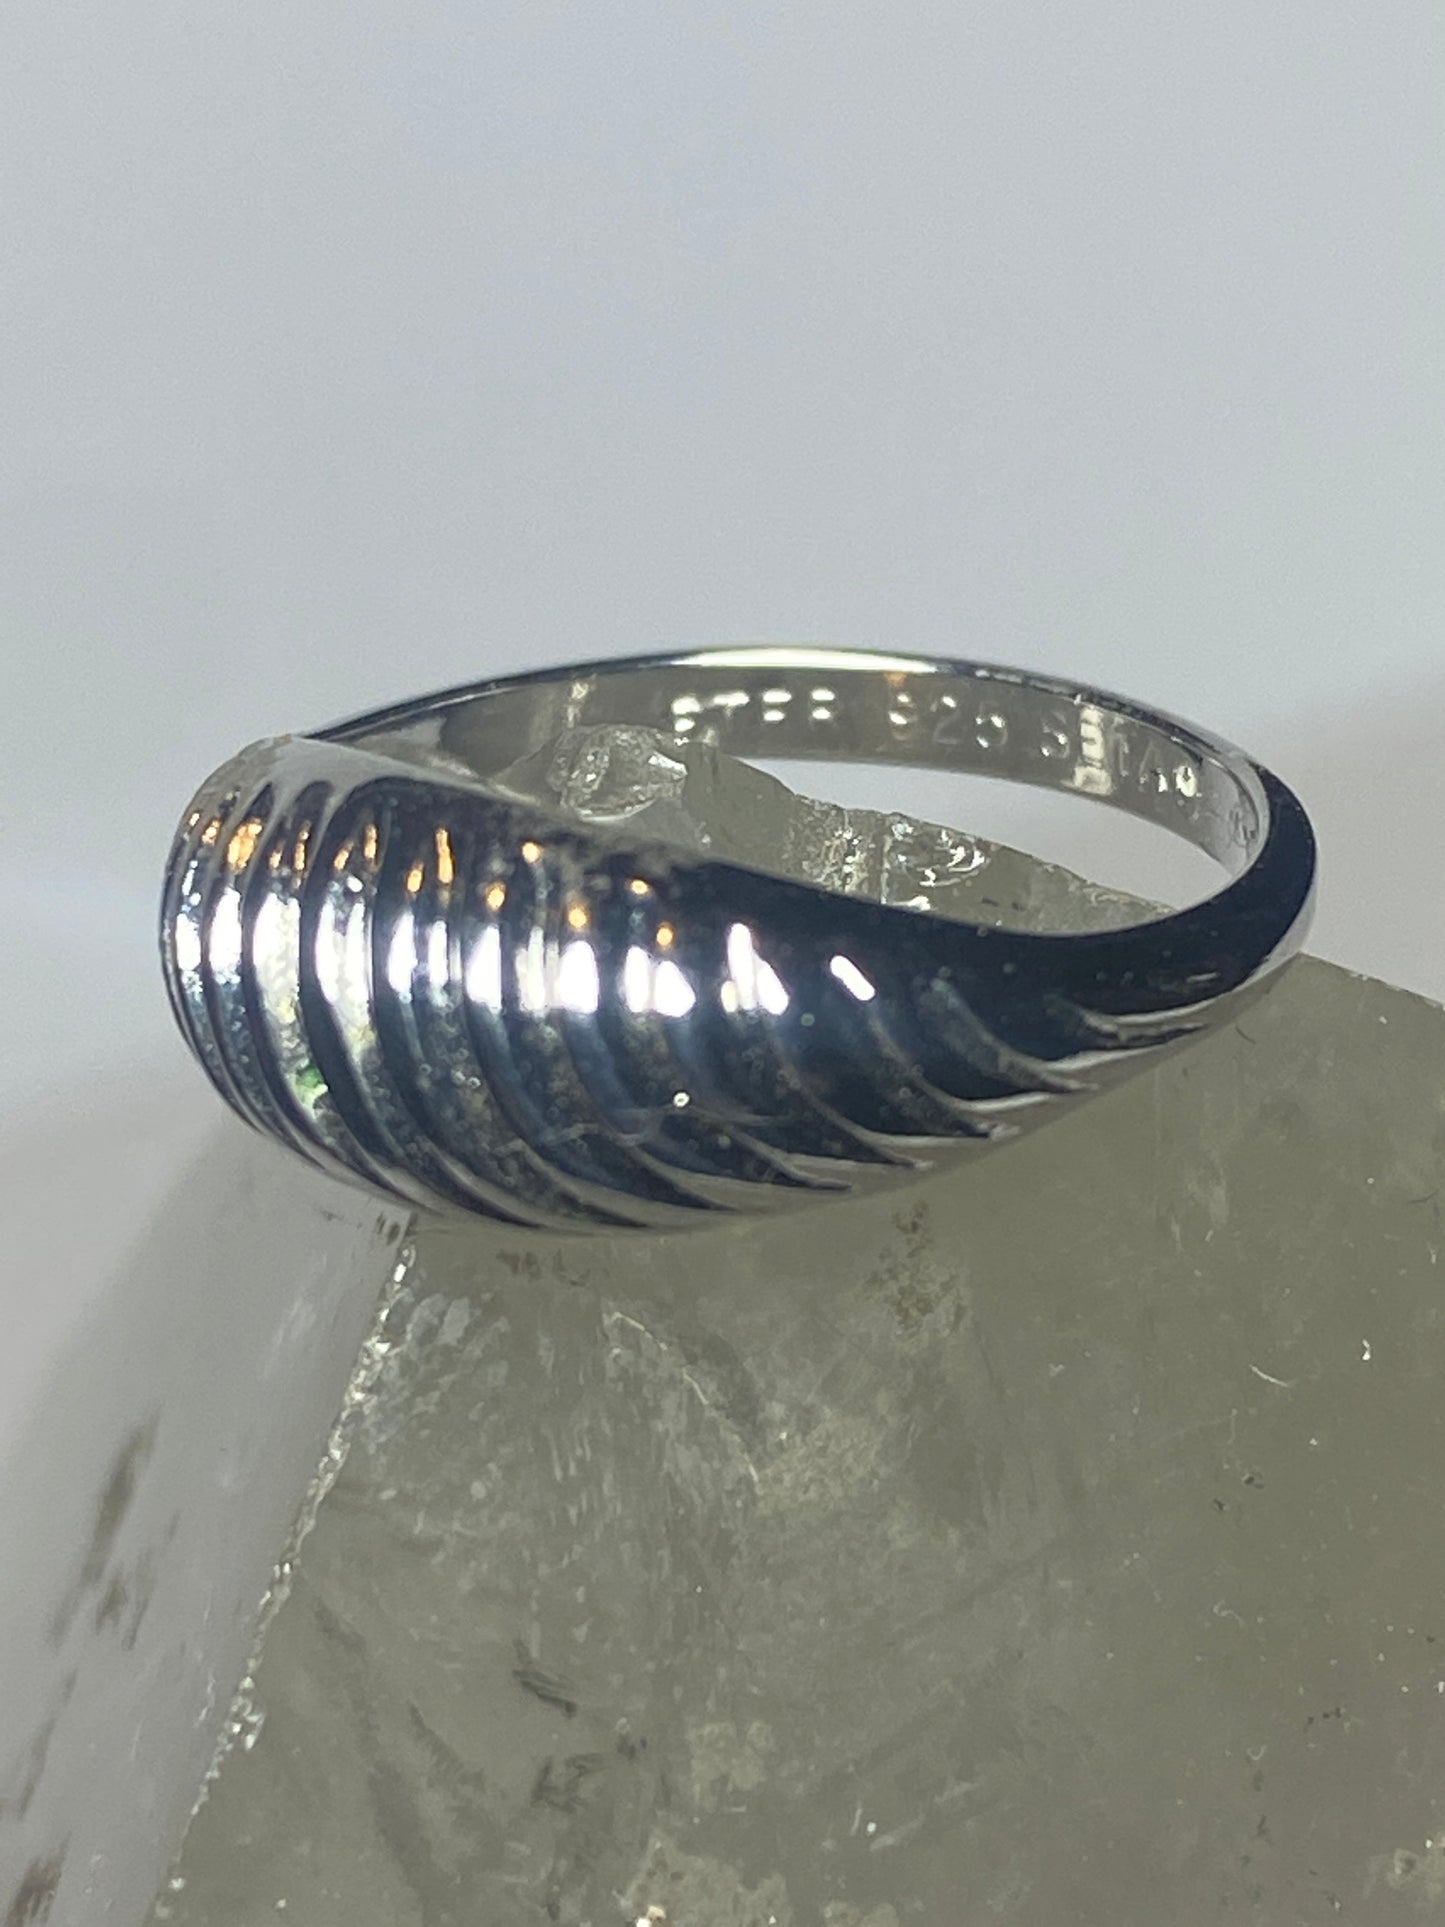 Shrimp design band slender pinky ring sterling silver women girls